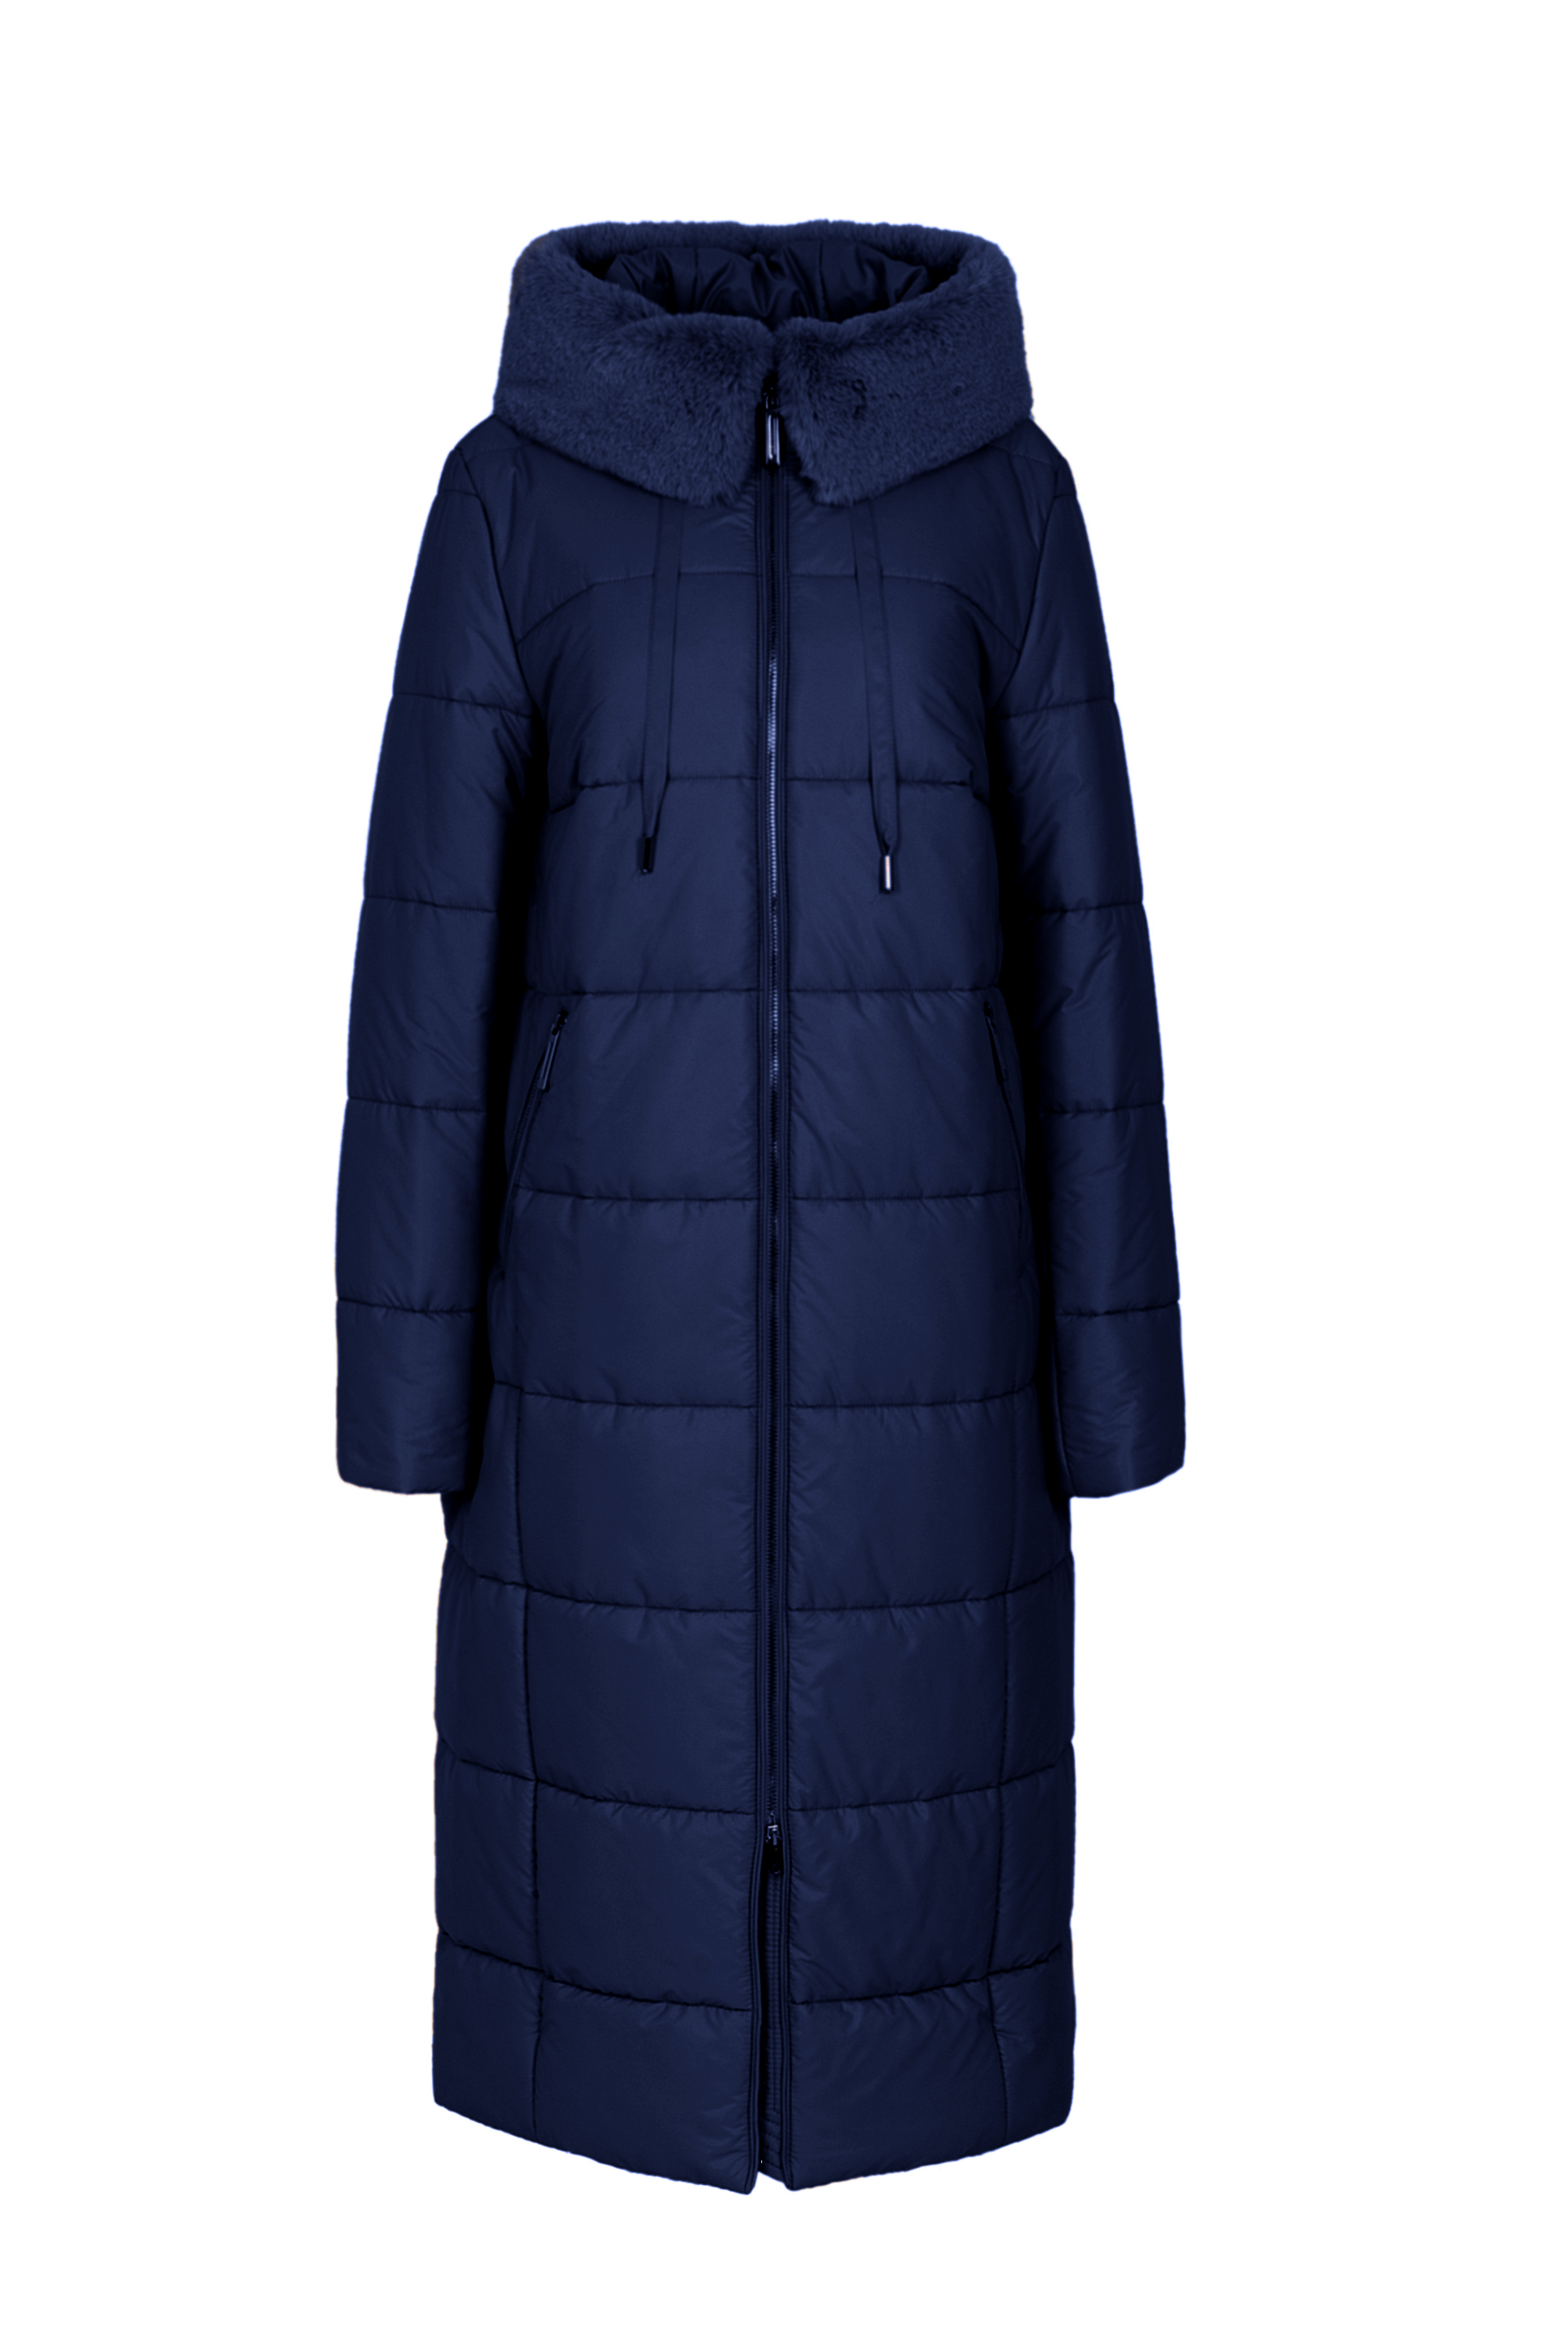 Пальто женское плащевое утепленное 5S-13062-1. Фото 1.